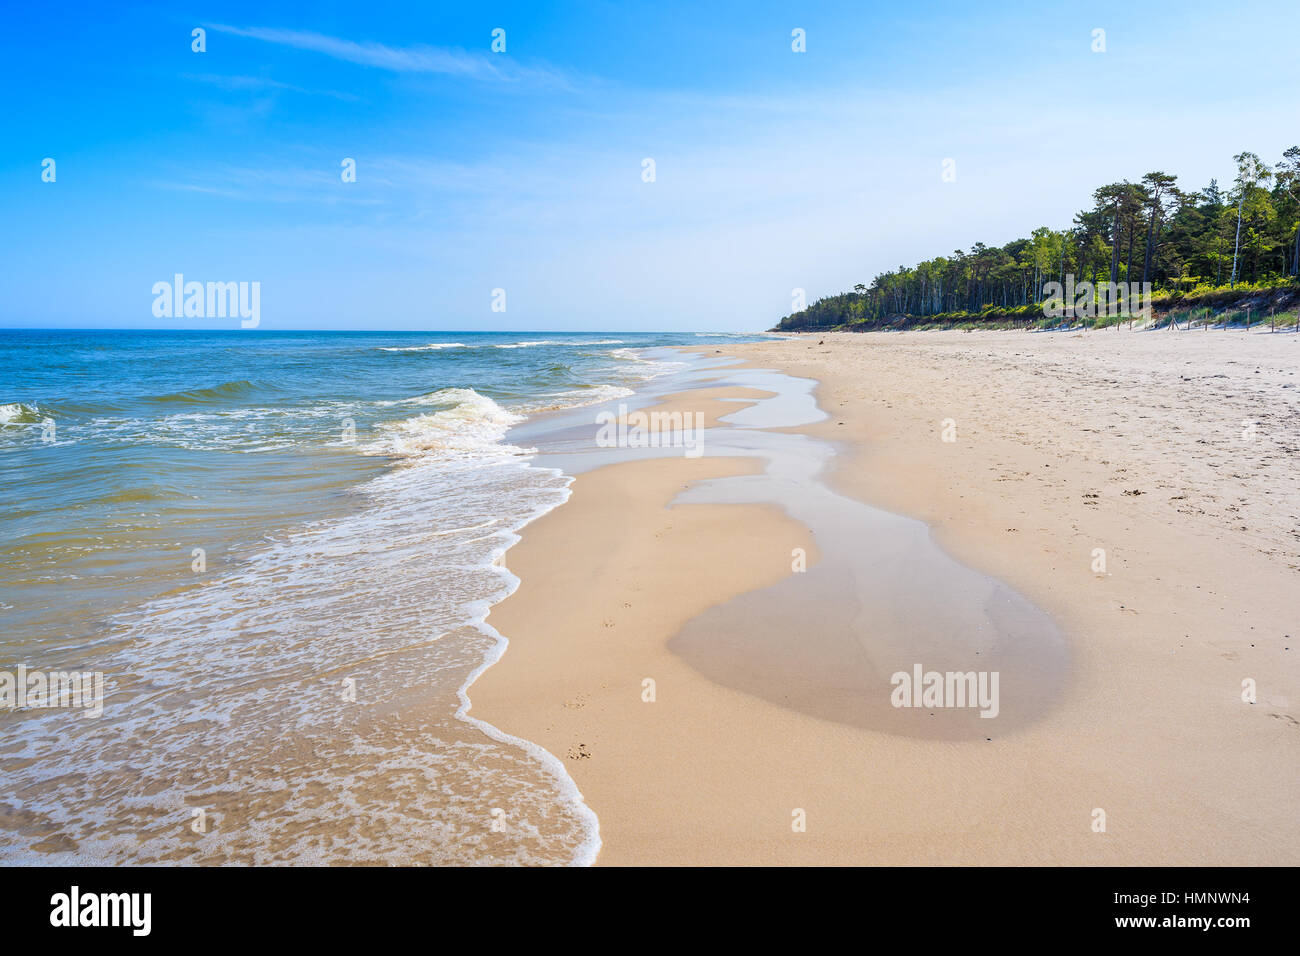 Très belle vue mer sur la plage de sable de Lubiatowo, mer Baltique, Pologne Banque D'Images